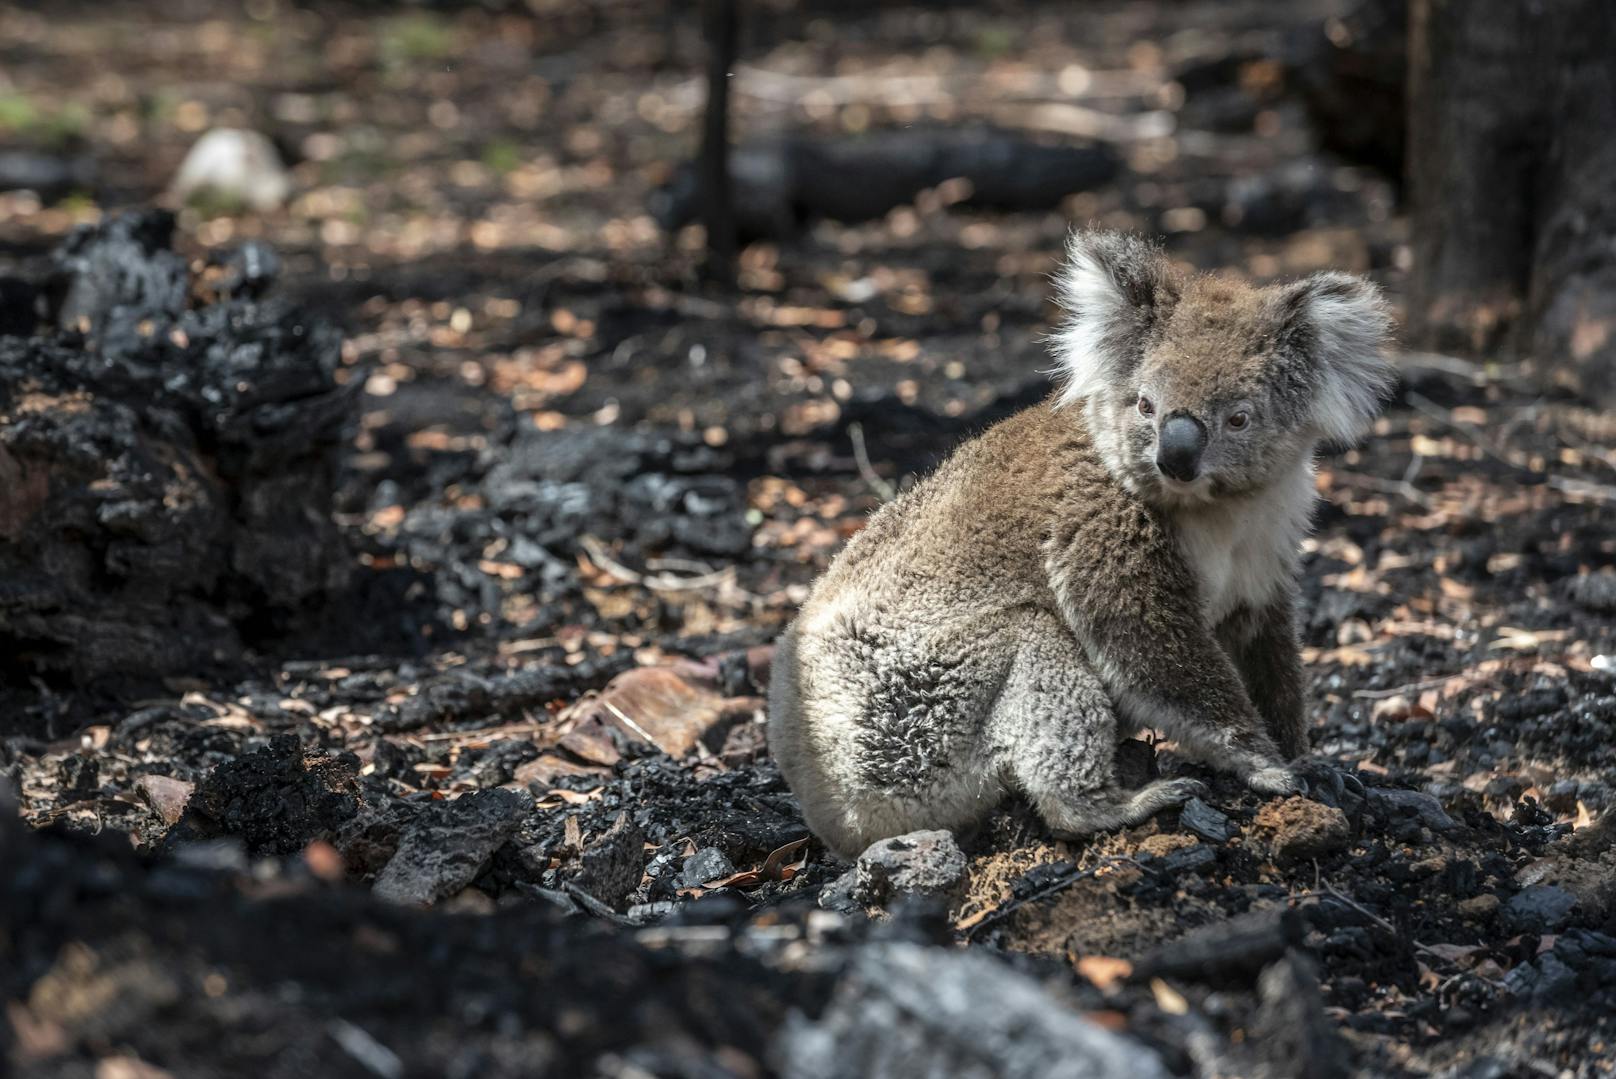 Bei Australiens Koala-Population ist hauptsächlich die Zerstörung des Lebensraums (etwa durch Buschbrände) für den Rückgang um 50 Prozent seit 2001 verantwortlich.